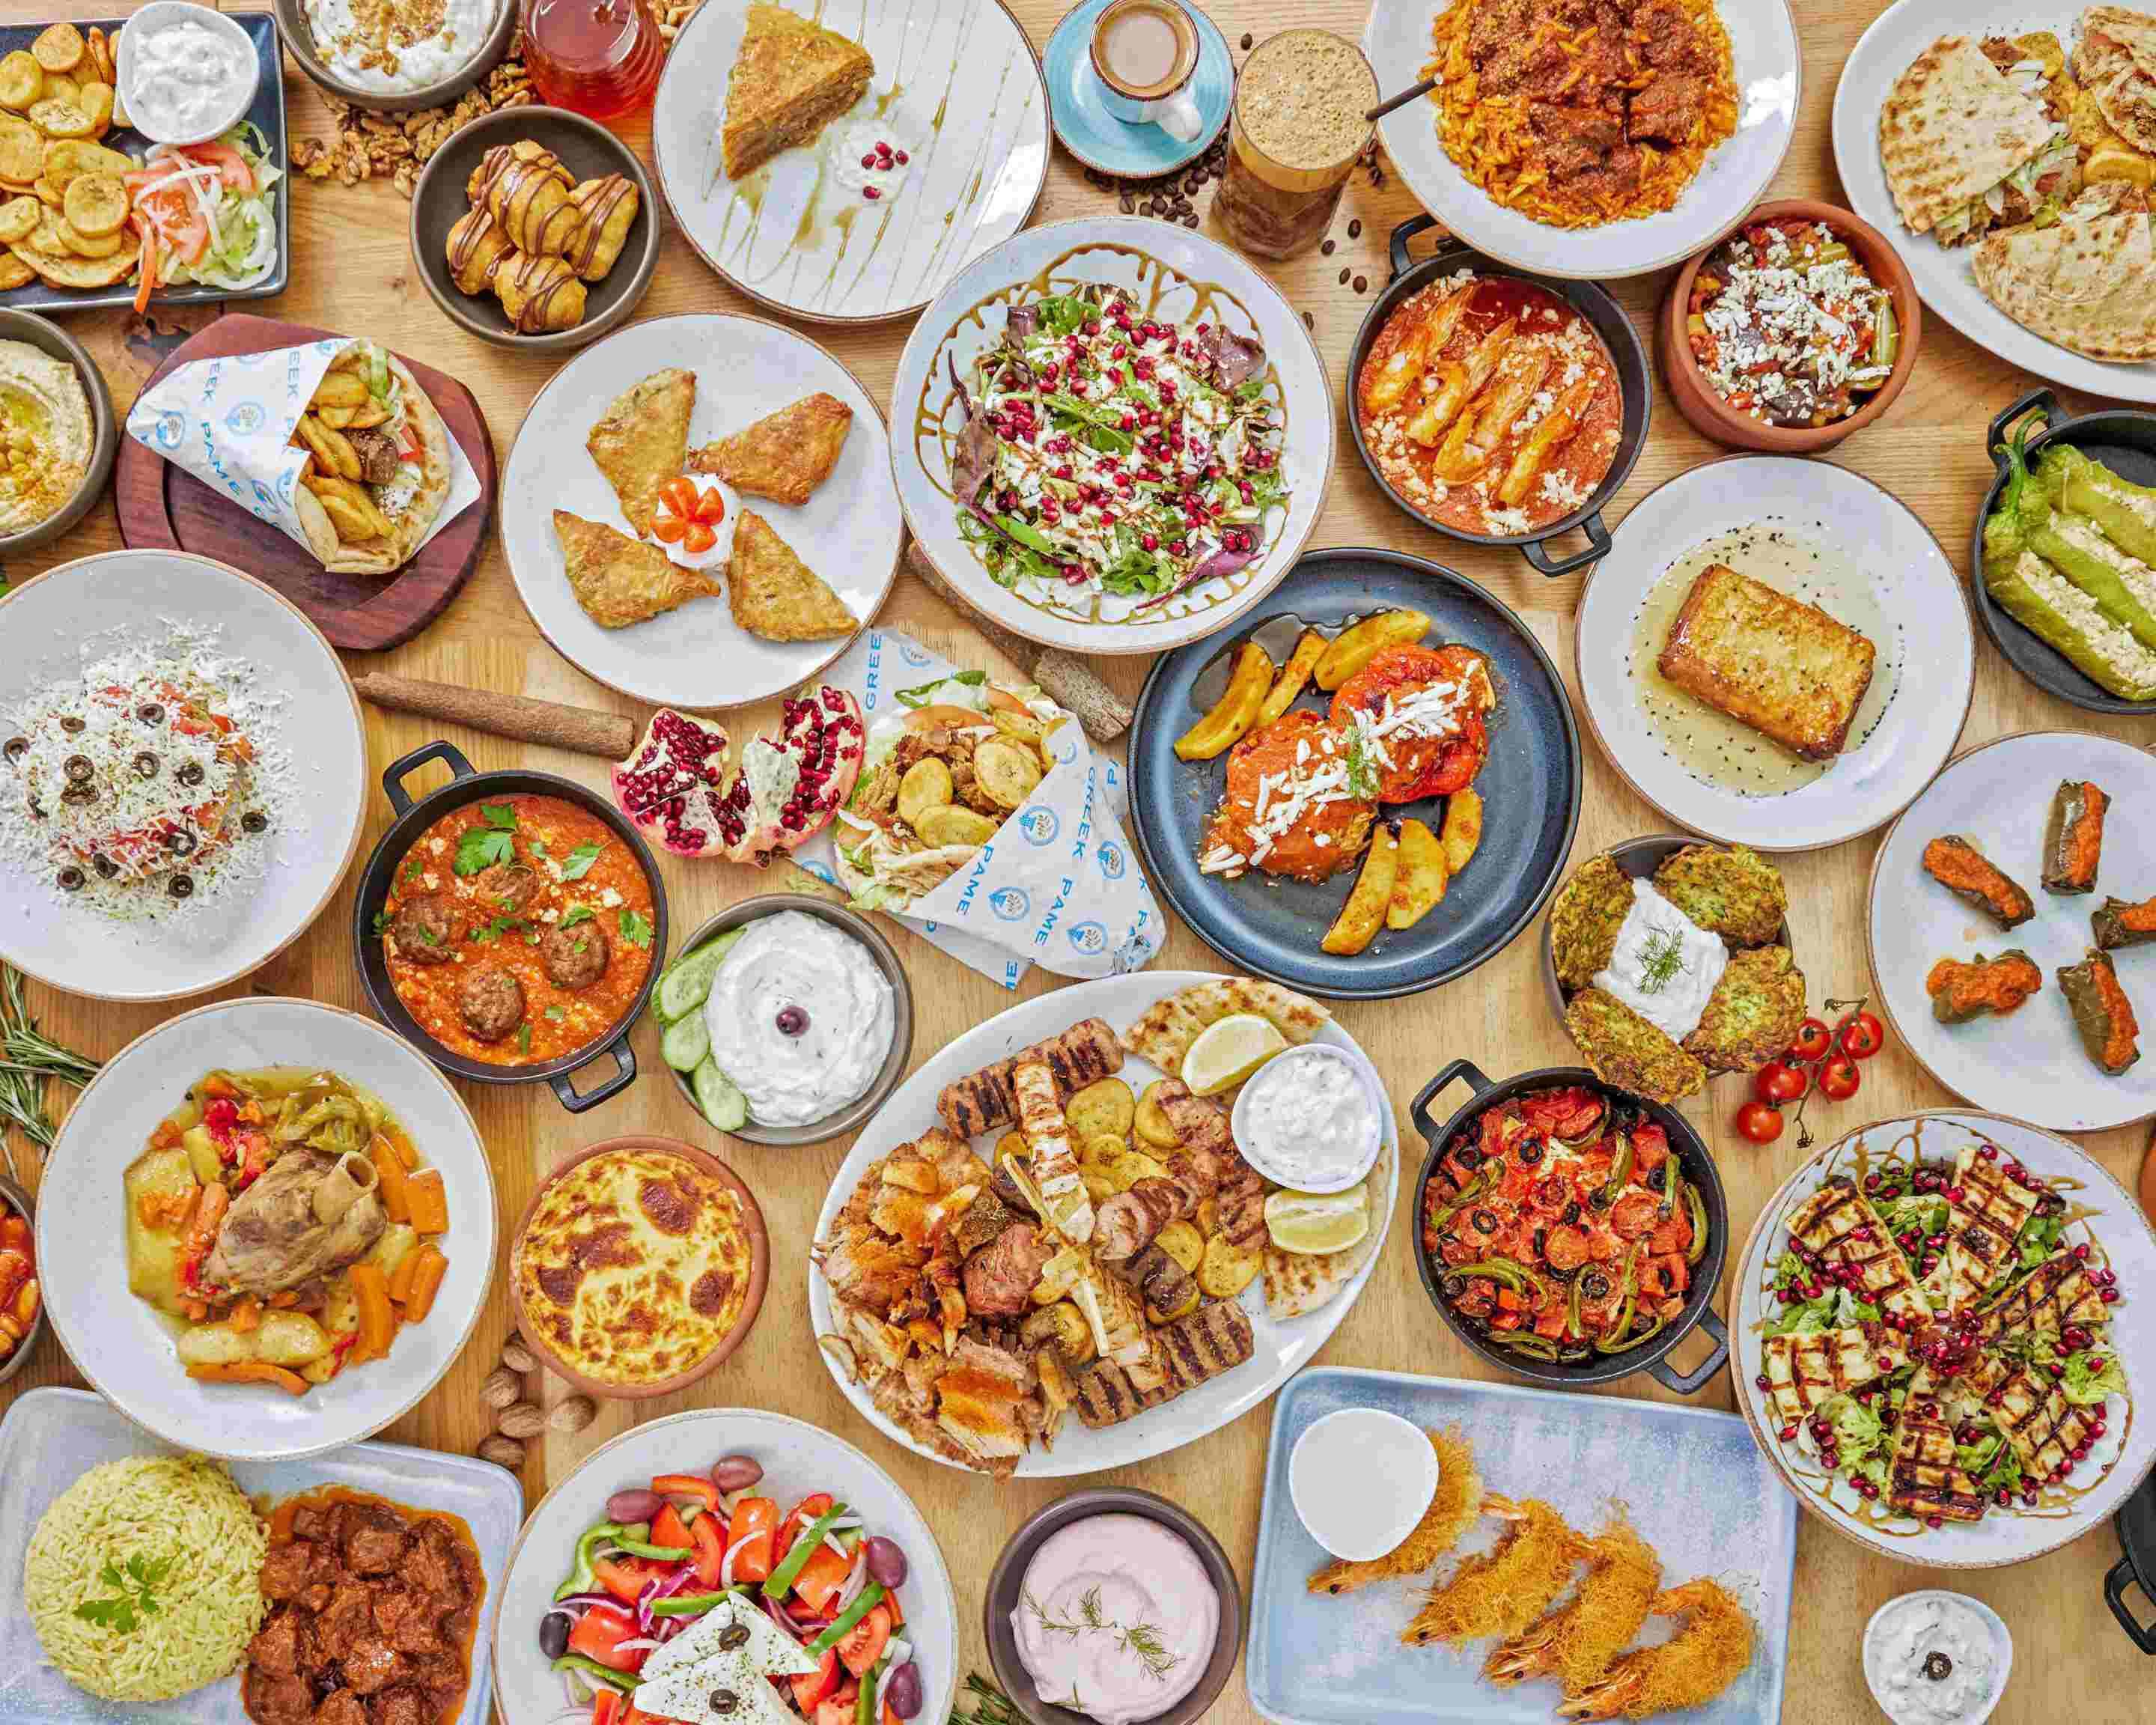 Pame Greek Menu - Takeaway in London | Delivery menu & prices | Uber Eats